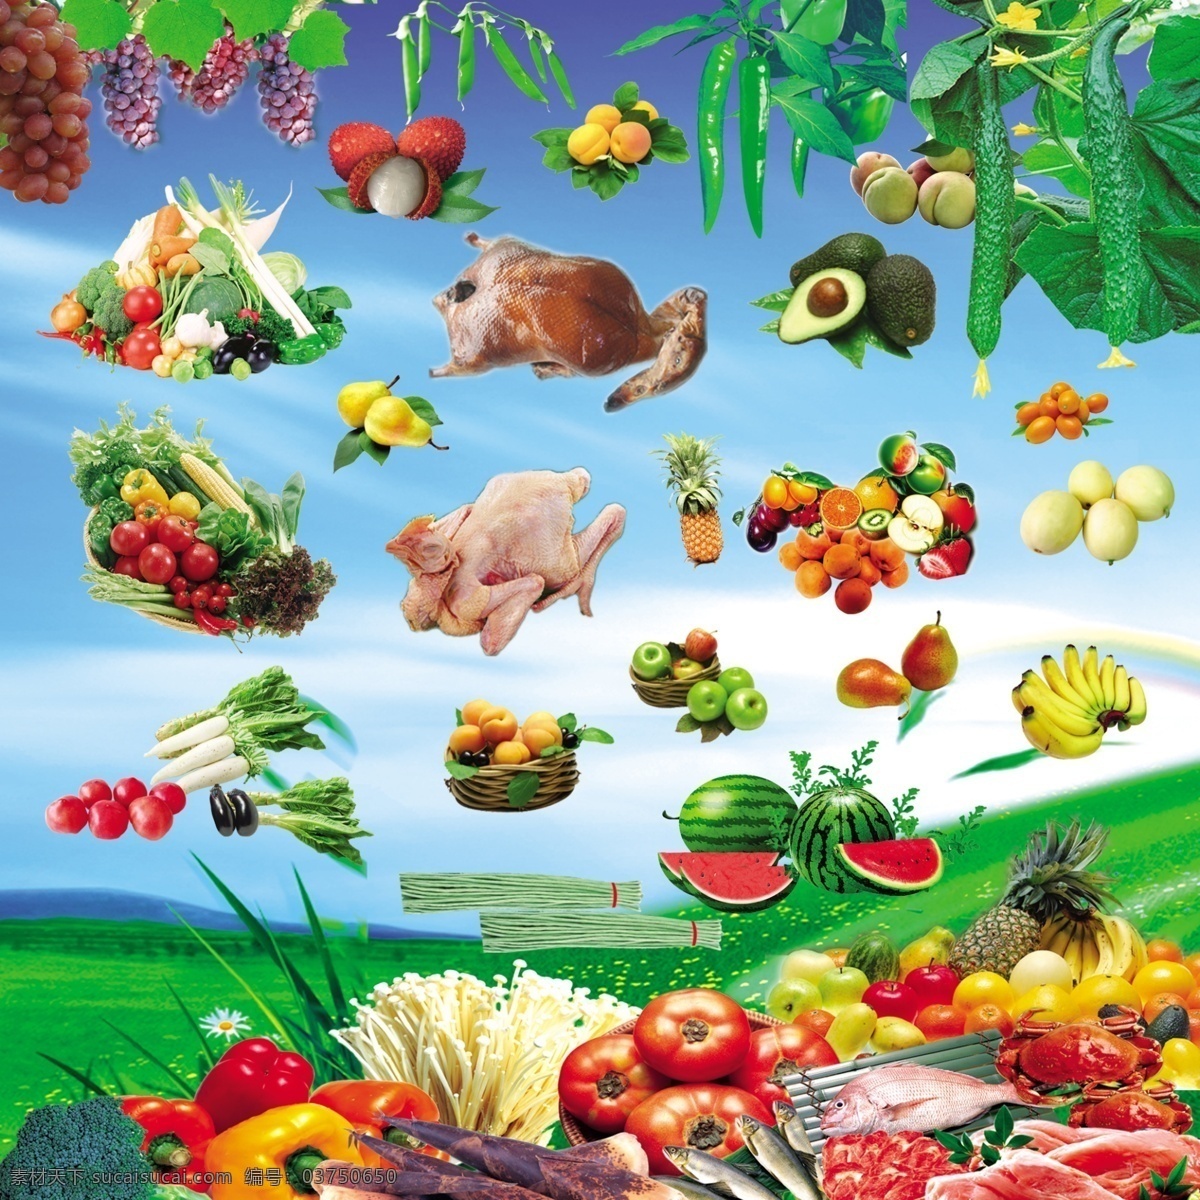 蔬菜 水果素材 水果 背景 蓝天 草地 葡萄 西红柿 西瓜 名片 名片设计 广告设计模板 源文件